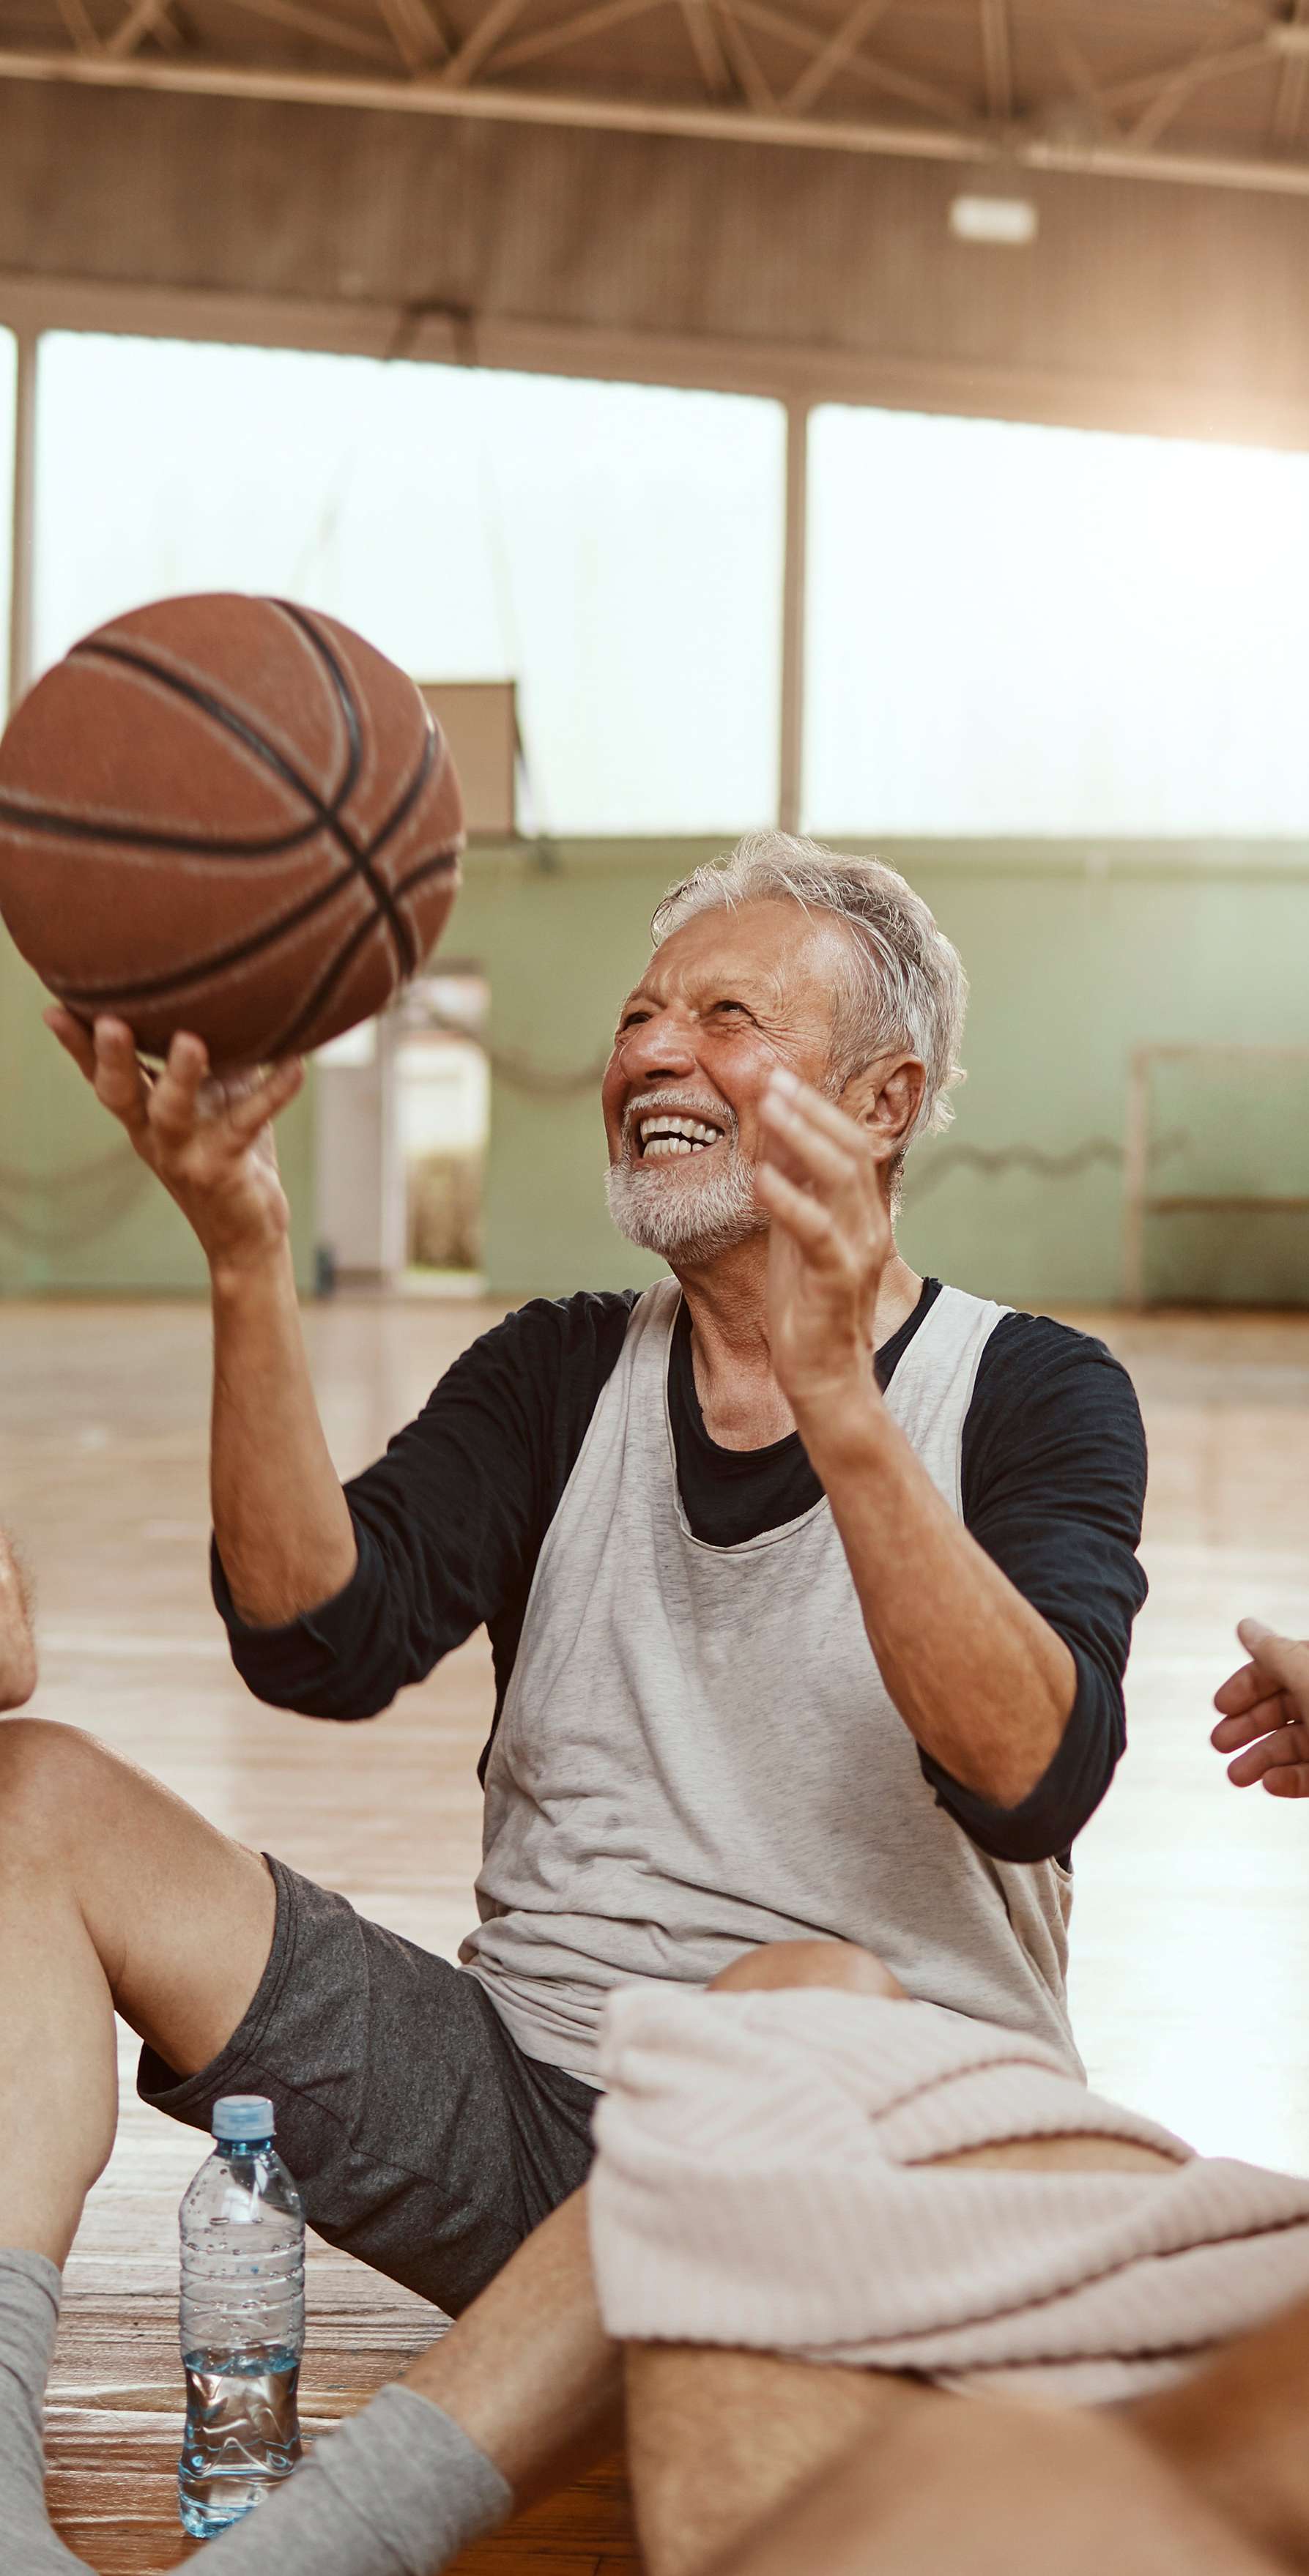 Ältere Männer sitzen im Kreis auf dem Boden einer Turnhalle und lachen, einer von ihnen hält einen Basketball hoch.